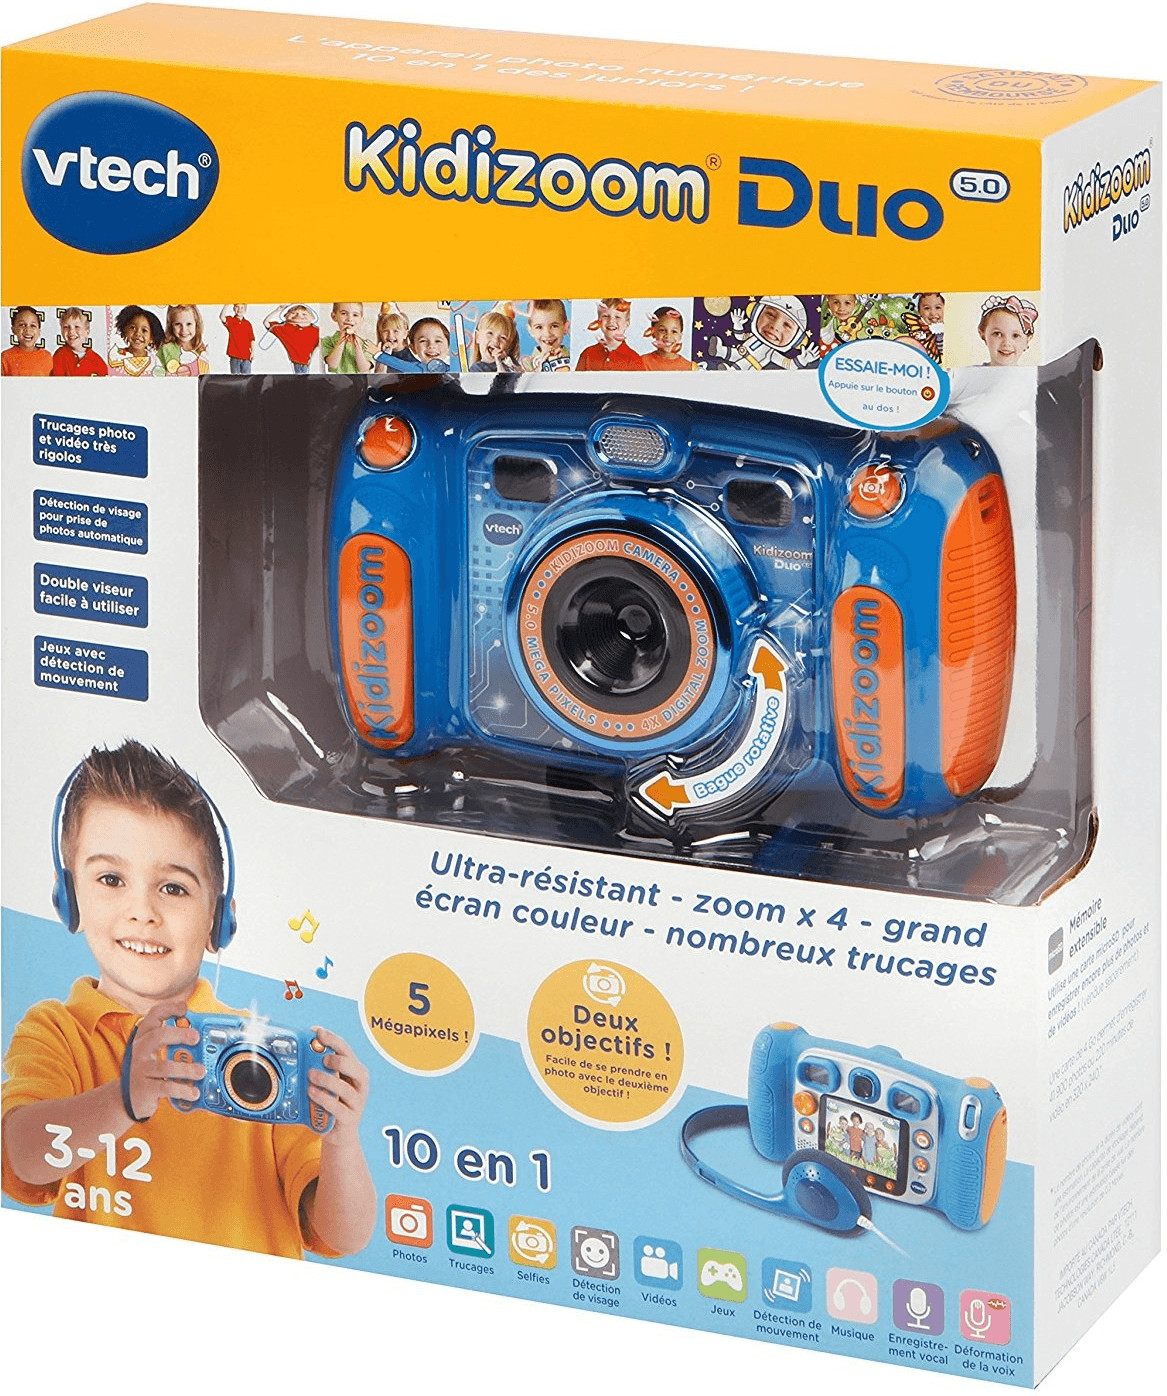 VTech - Kidizoom Duo DX Rose, Appareil Photo Enfant 10 En 1, Camera enfant  - 3/12 ans â€“ Version FR